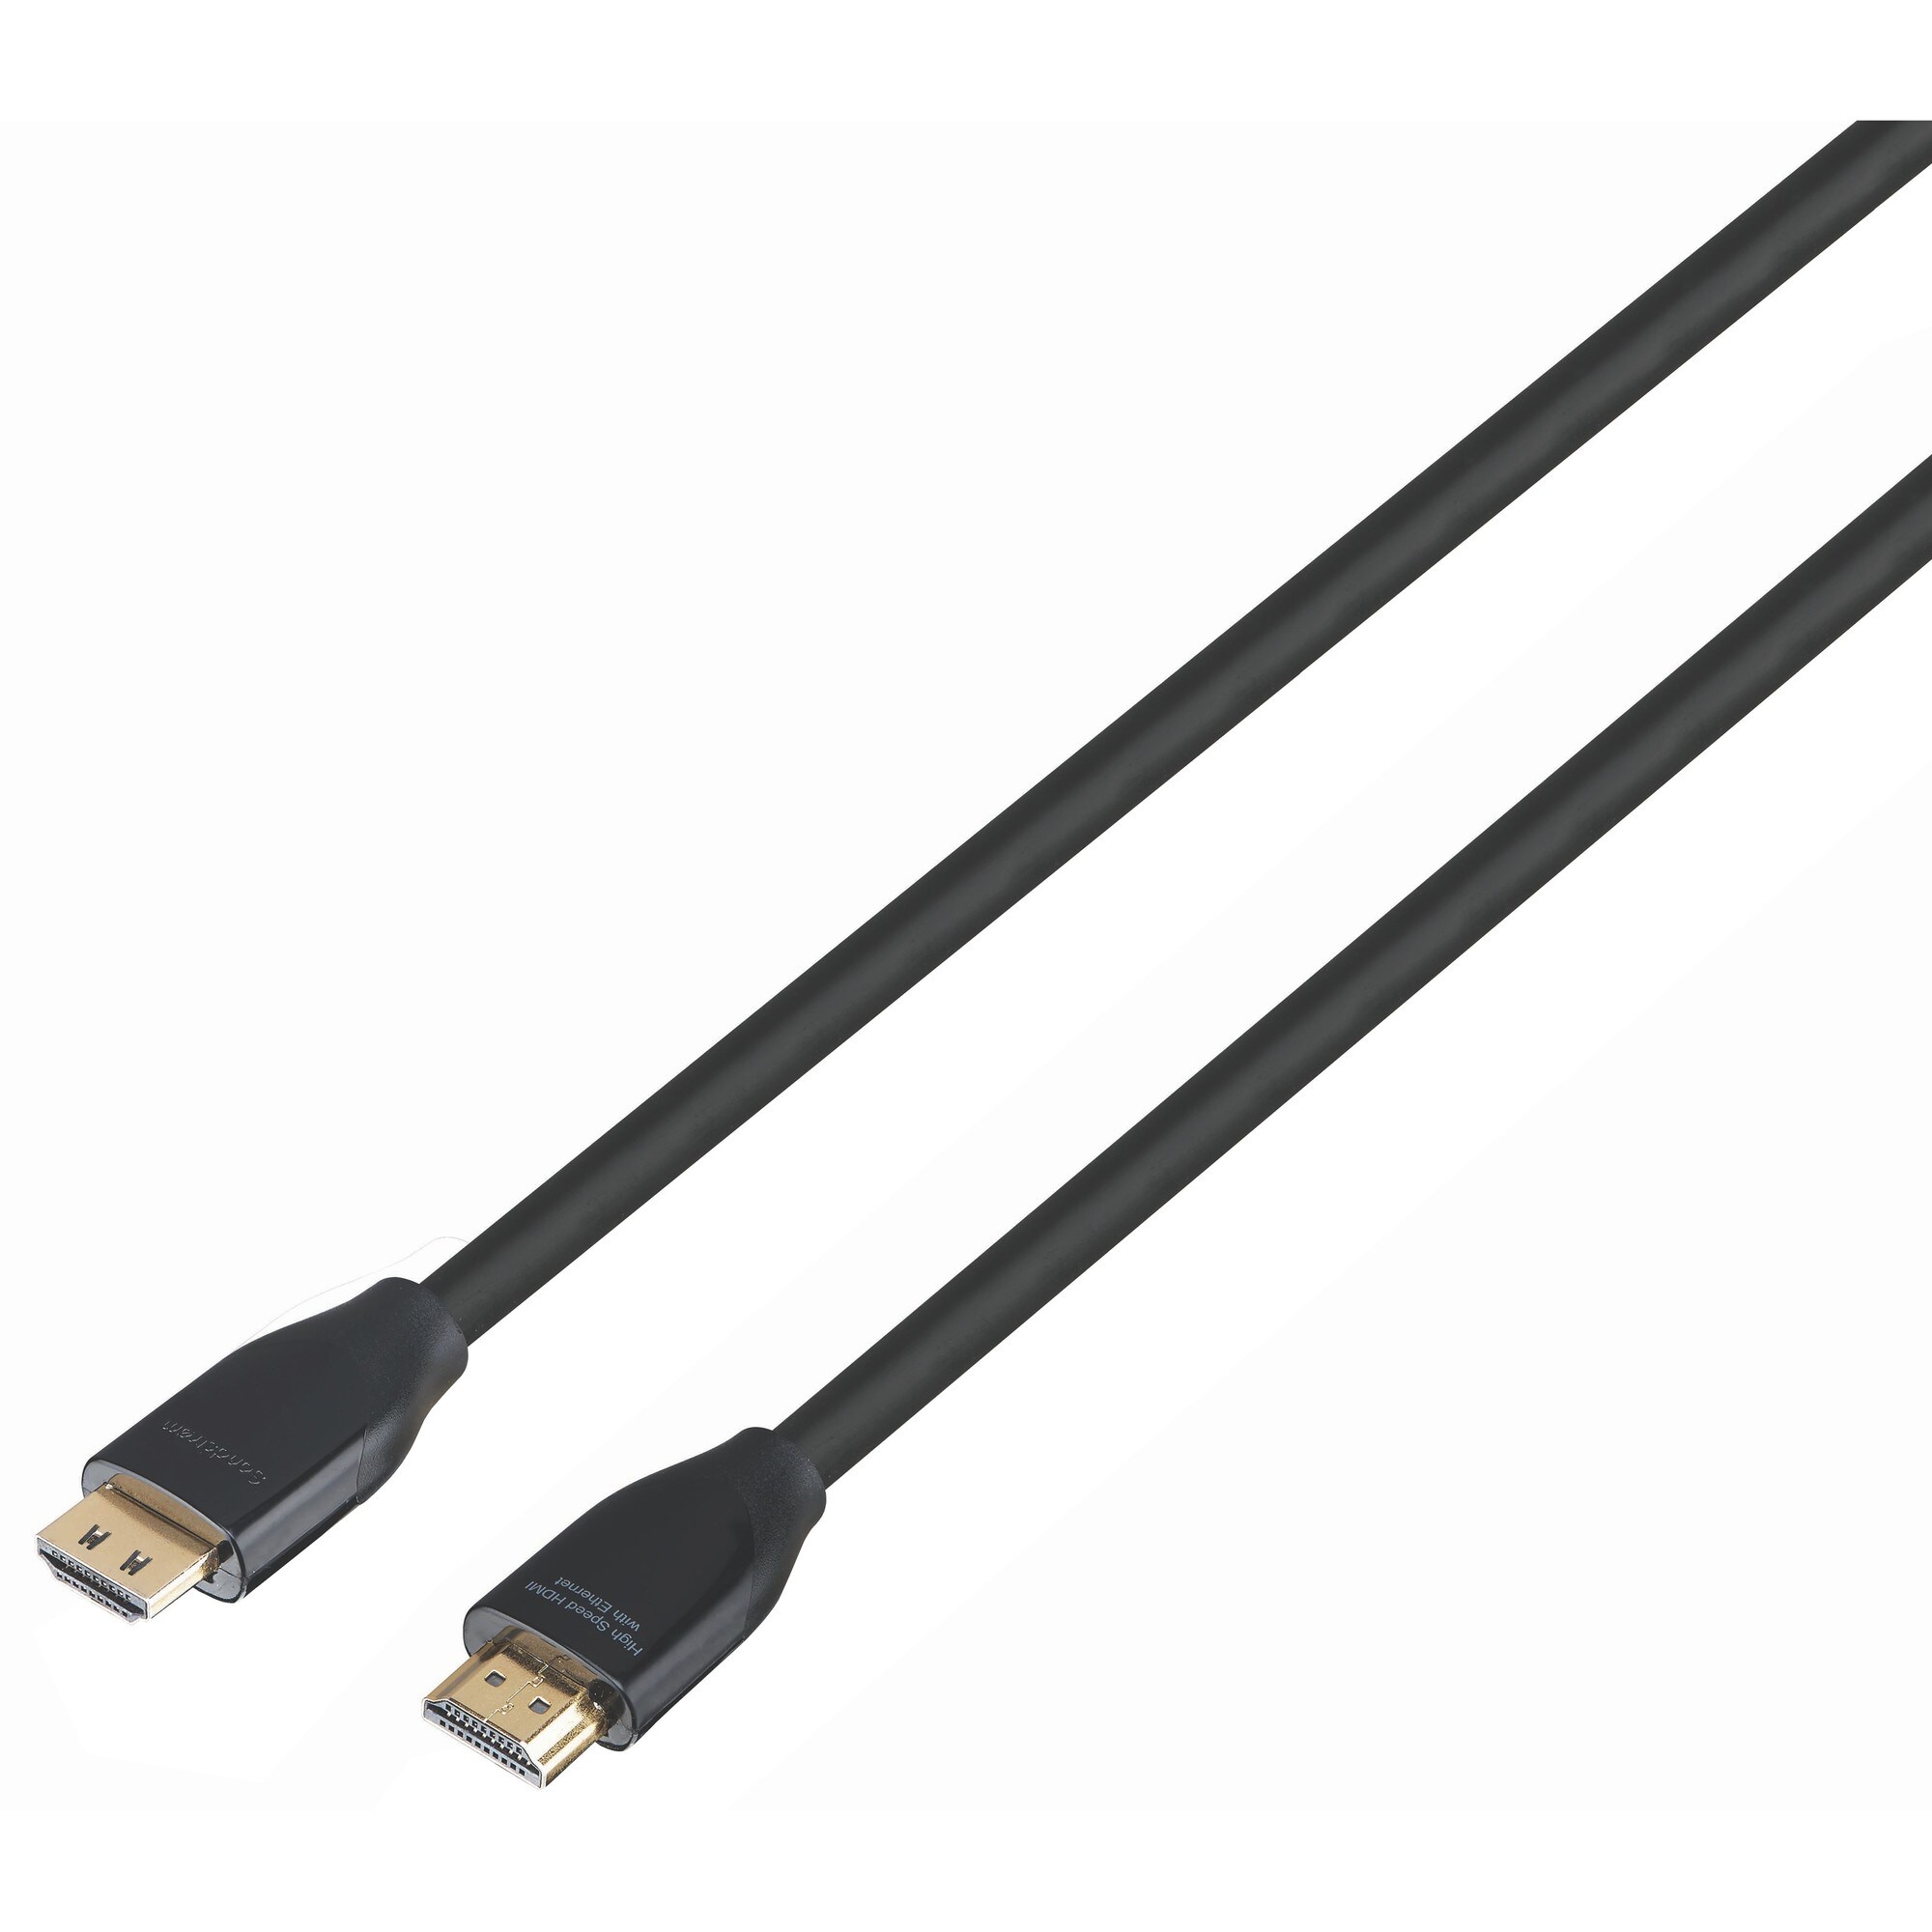 Sandstrøm HDMI-kabel - 5 meter | Elgiganten